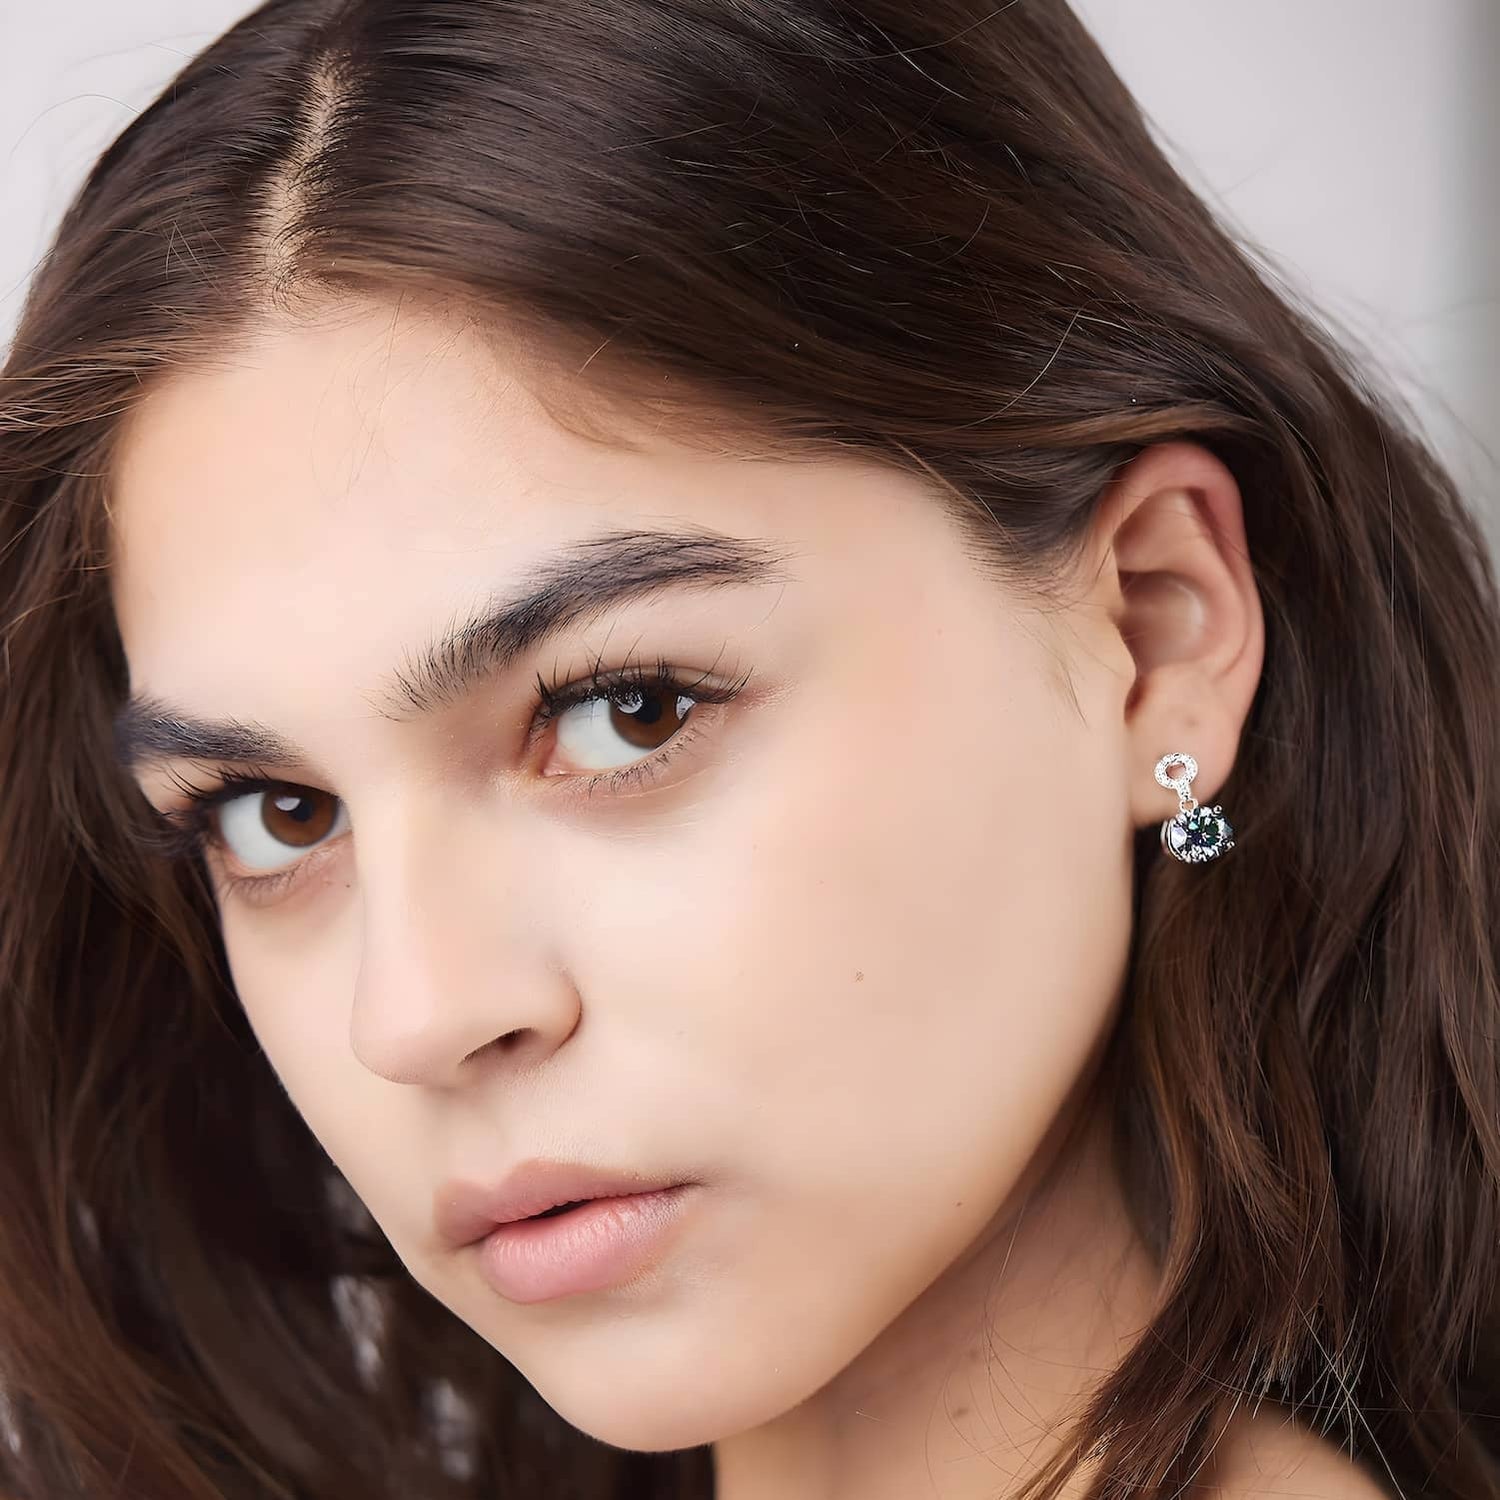 Model wearing the 2 carat moissanite drop earrings in dazzling color